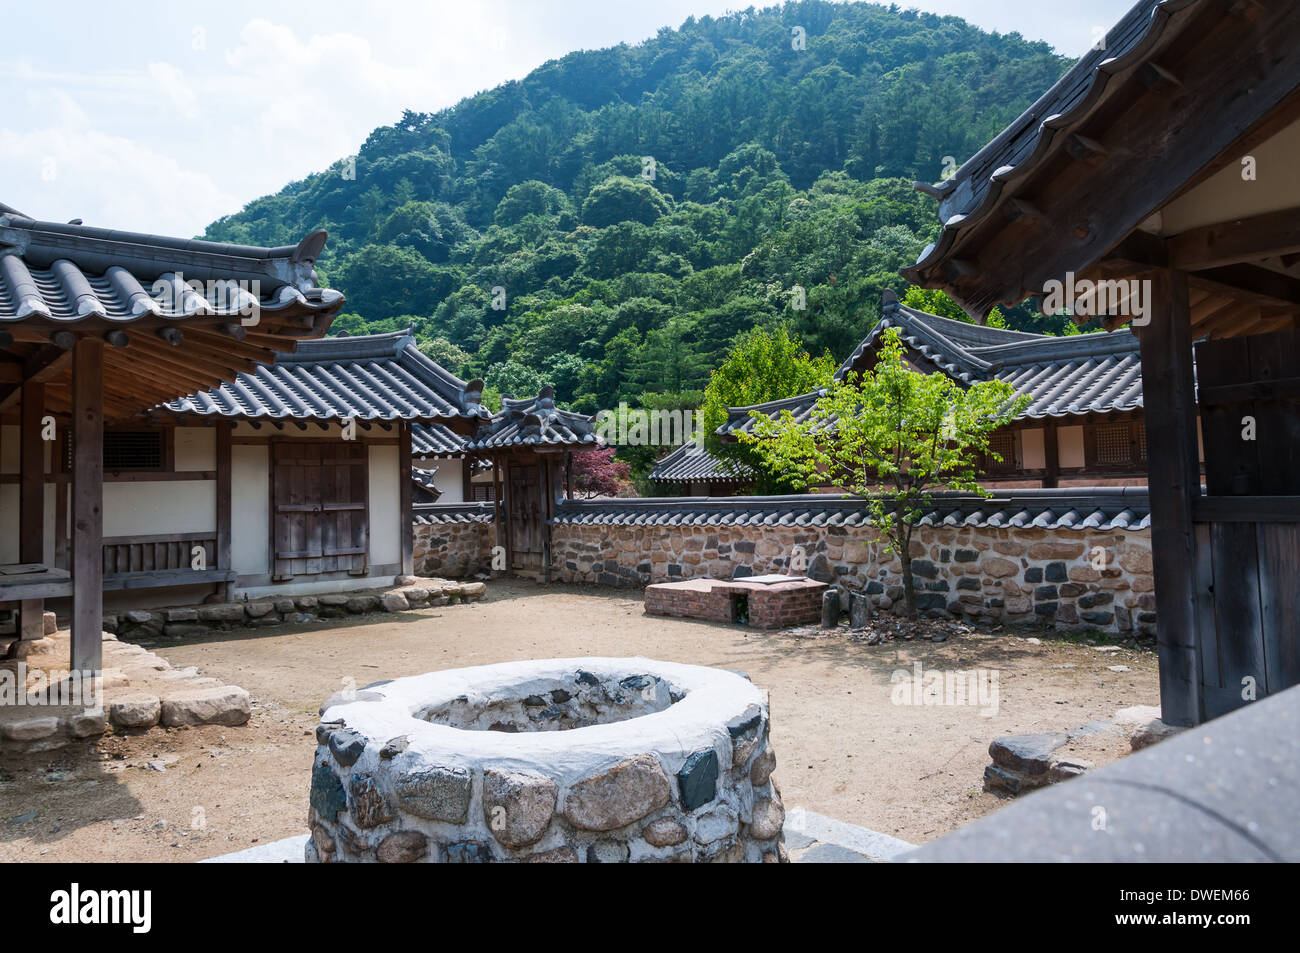 Tradizionale architettura coreana in un villaggio storico in Corea del Sud. Foto Stock